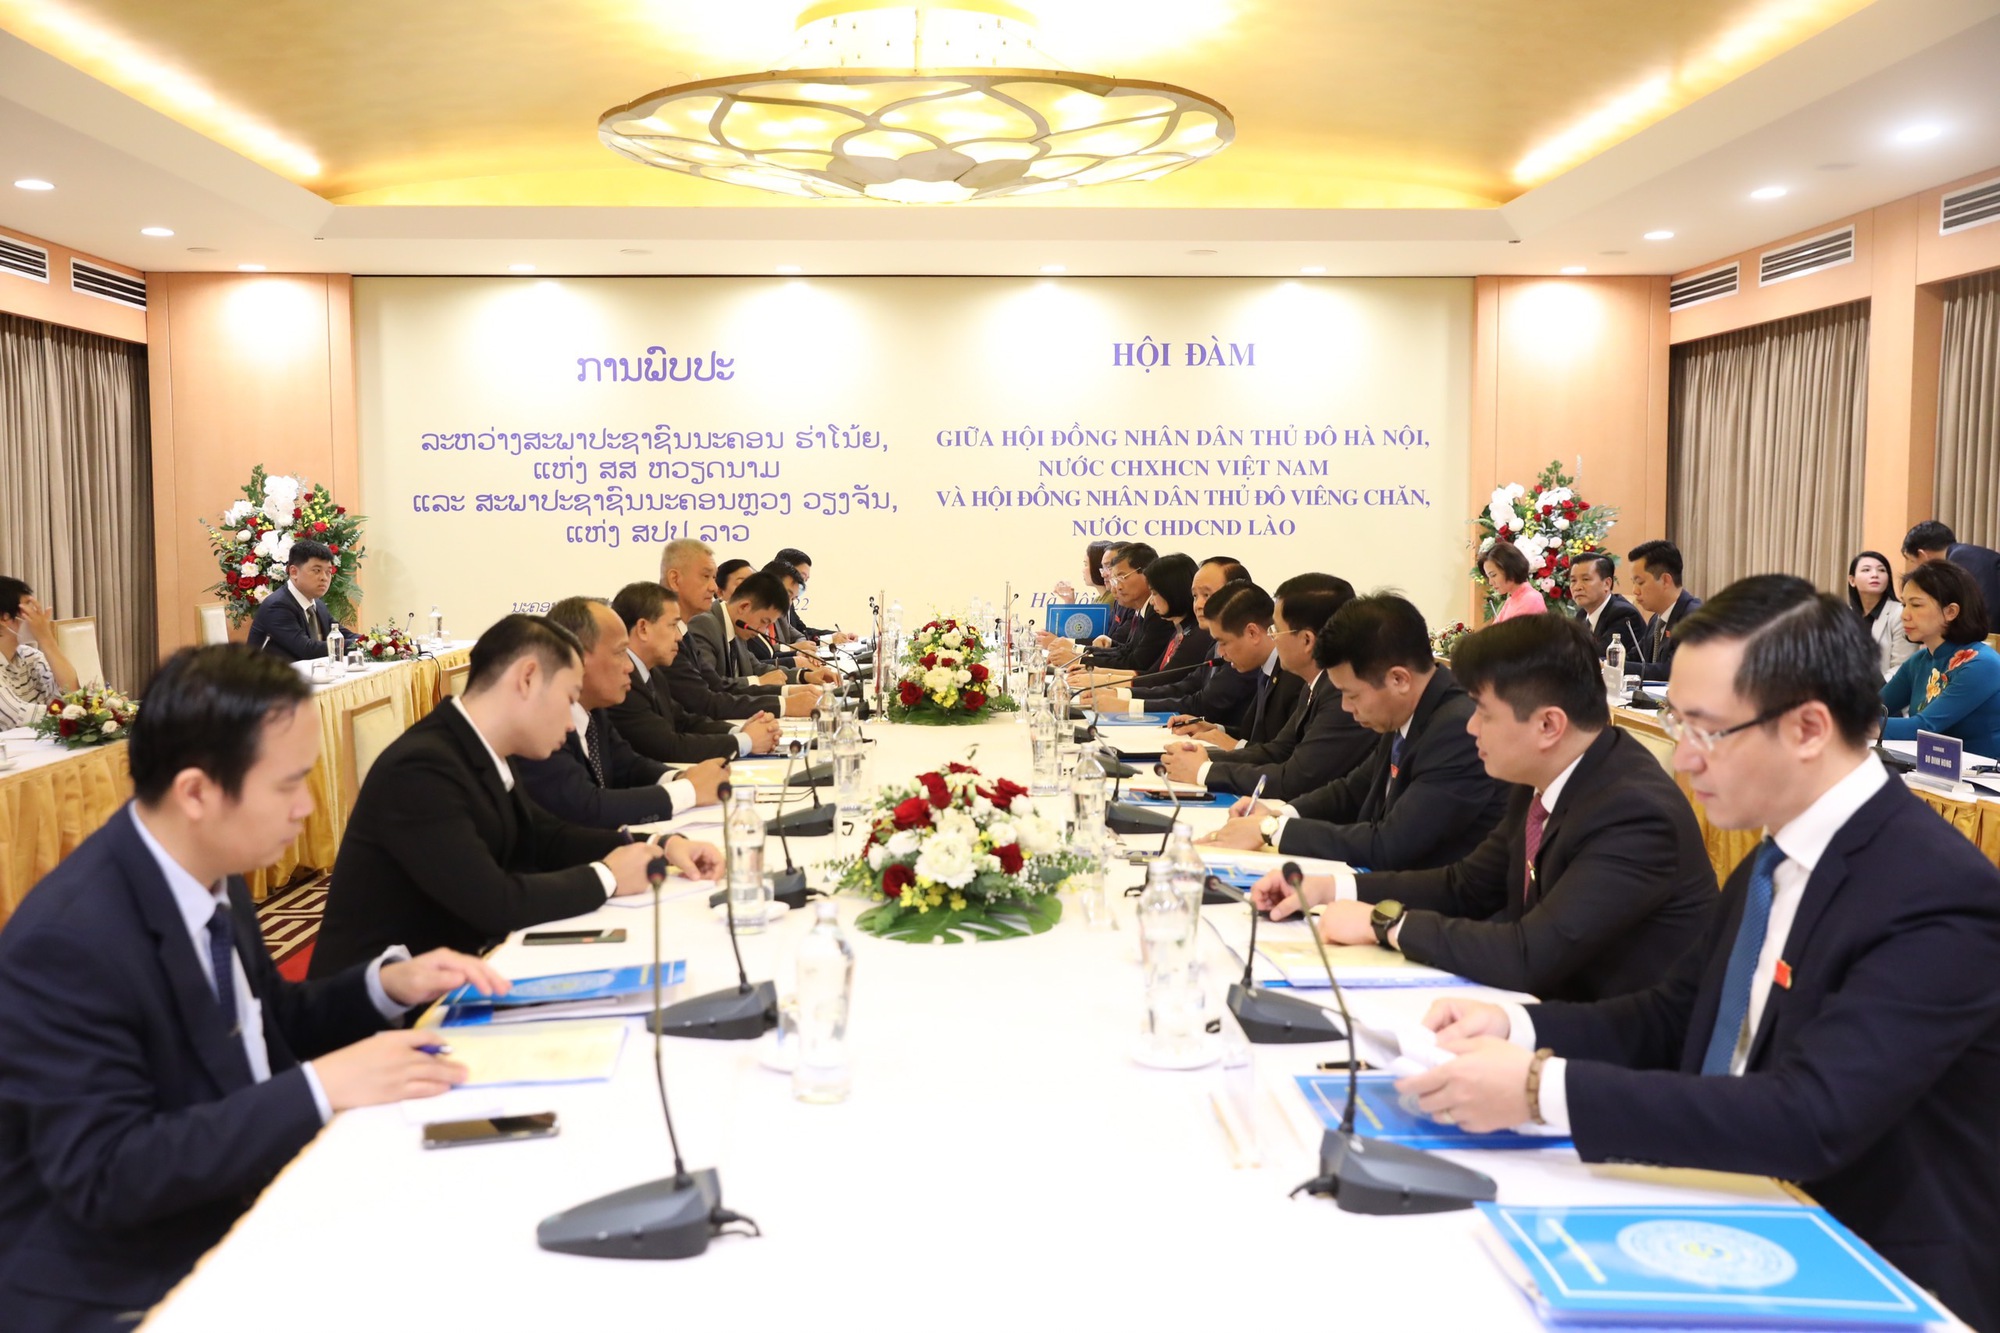 Thủ đô Hà Nội - Thủ đô Viêng Chăn: Tích cực phối hợp, nâng cao hiệu quả hoạt động của HĐND - Ảnh 1.